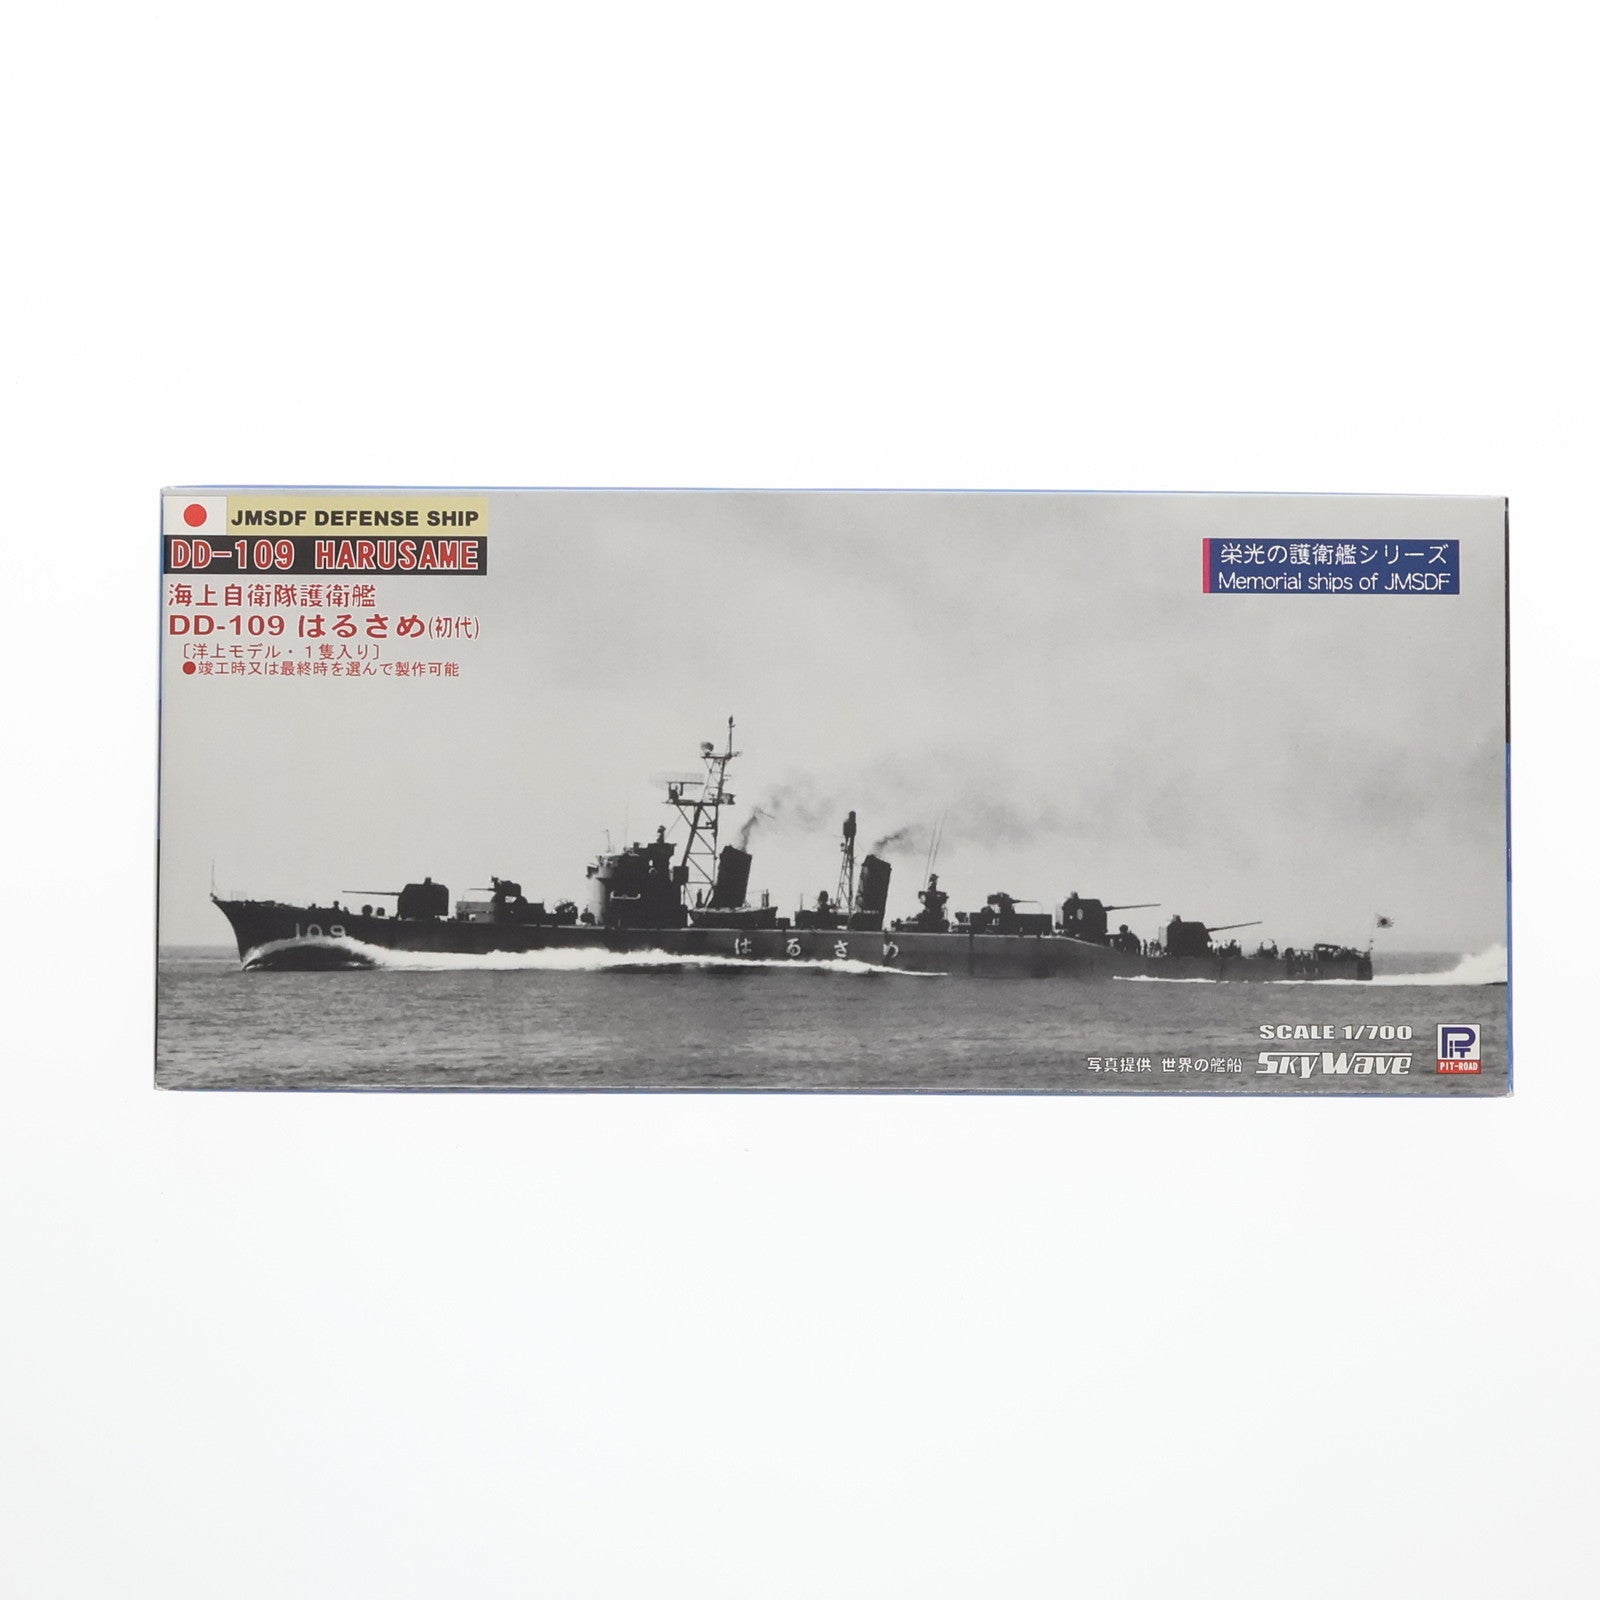 【中古即納】[PTM]スカイウェーブシリーズ 1/700 海上自衛隊護衛艦 はるさめ(初代) プラモデル(J46) ピットロード(20110305)